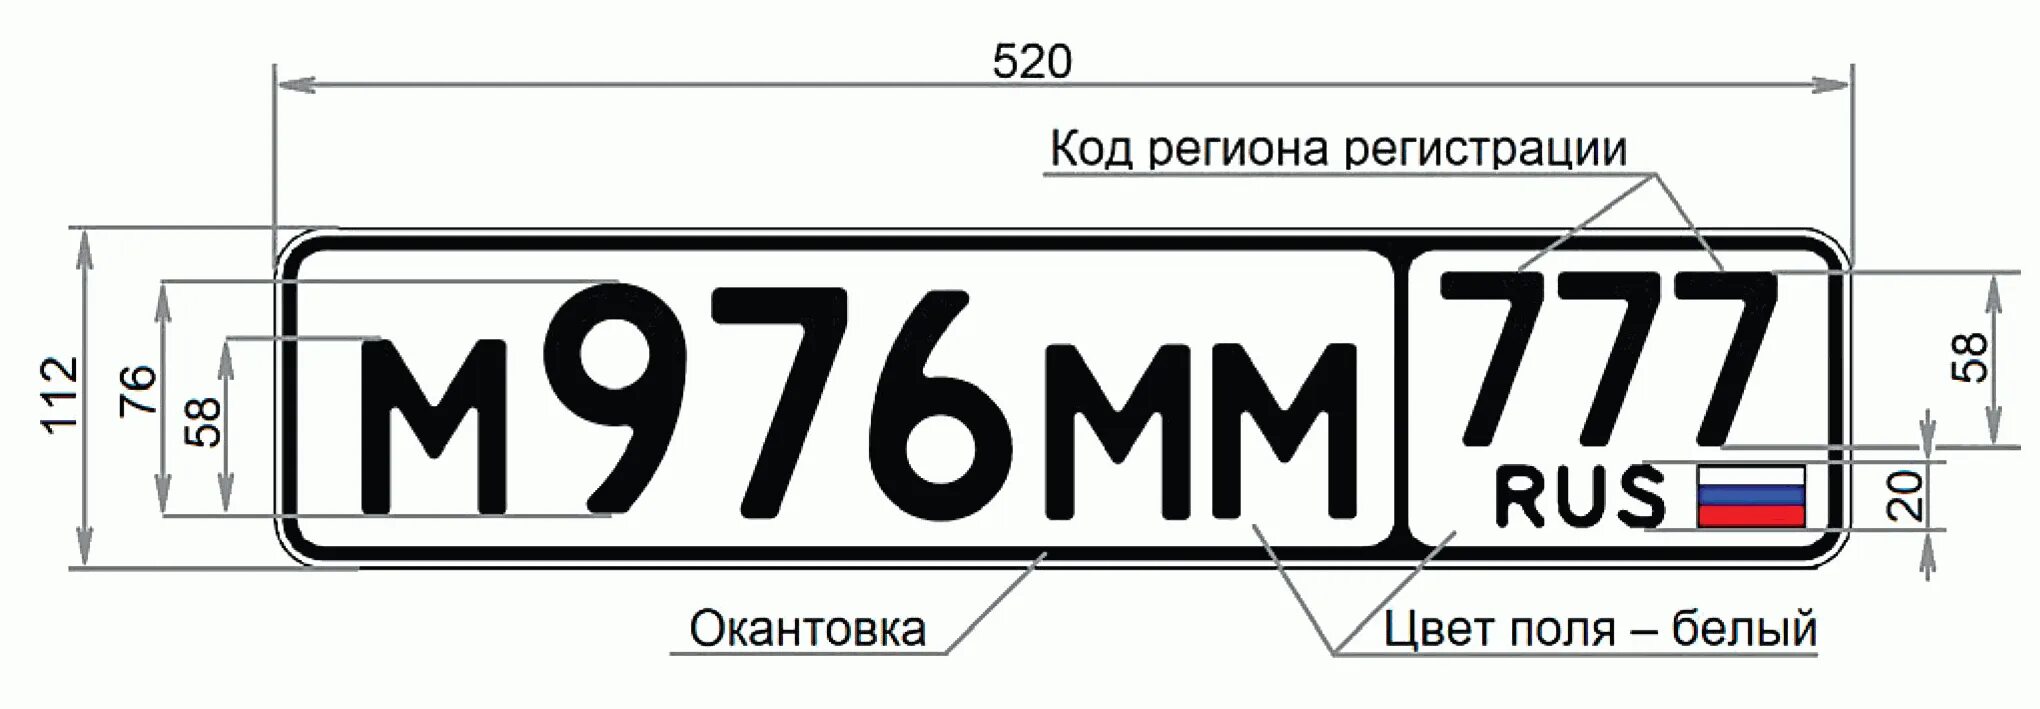 Номерной знак в652сх09. Стандарт автомобильных номеров РФ. Госномер Тип 1а Размеры. Гос рег номер автомобиля.